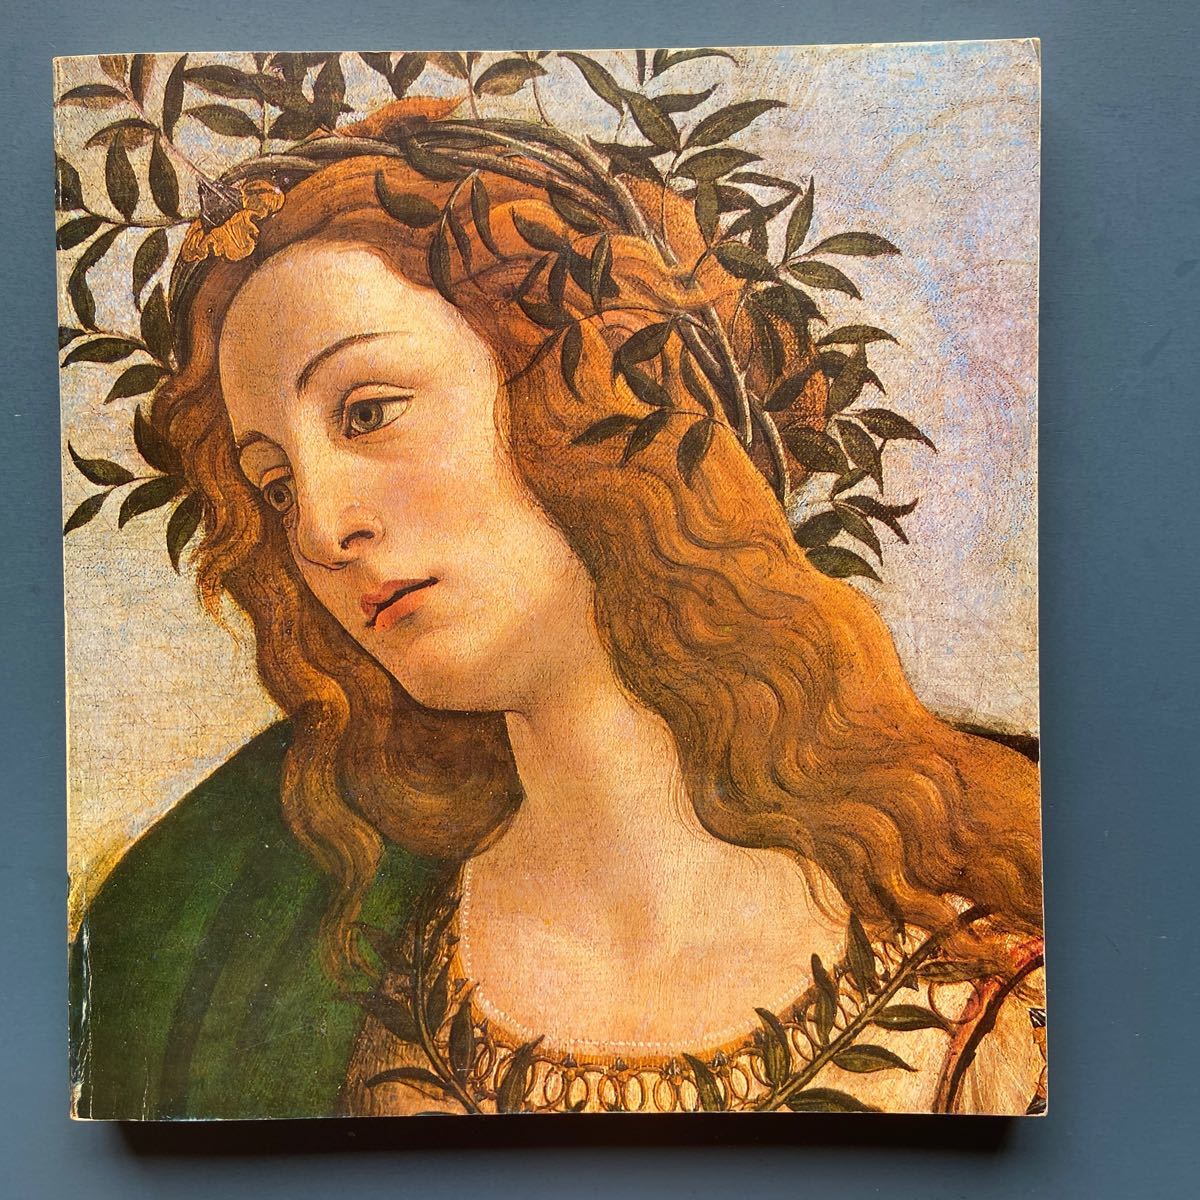 Catálogo Exposición de Arte del Renacimiento Italiano 1980-81, cuadro, Libro de arte, colección de obras, Catálogo ilustrado